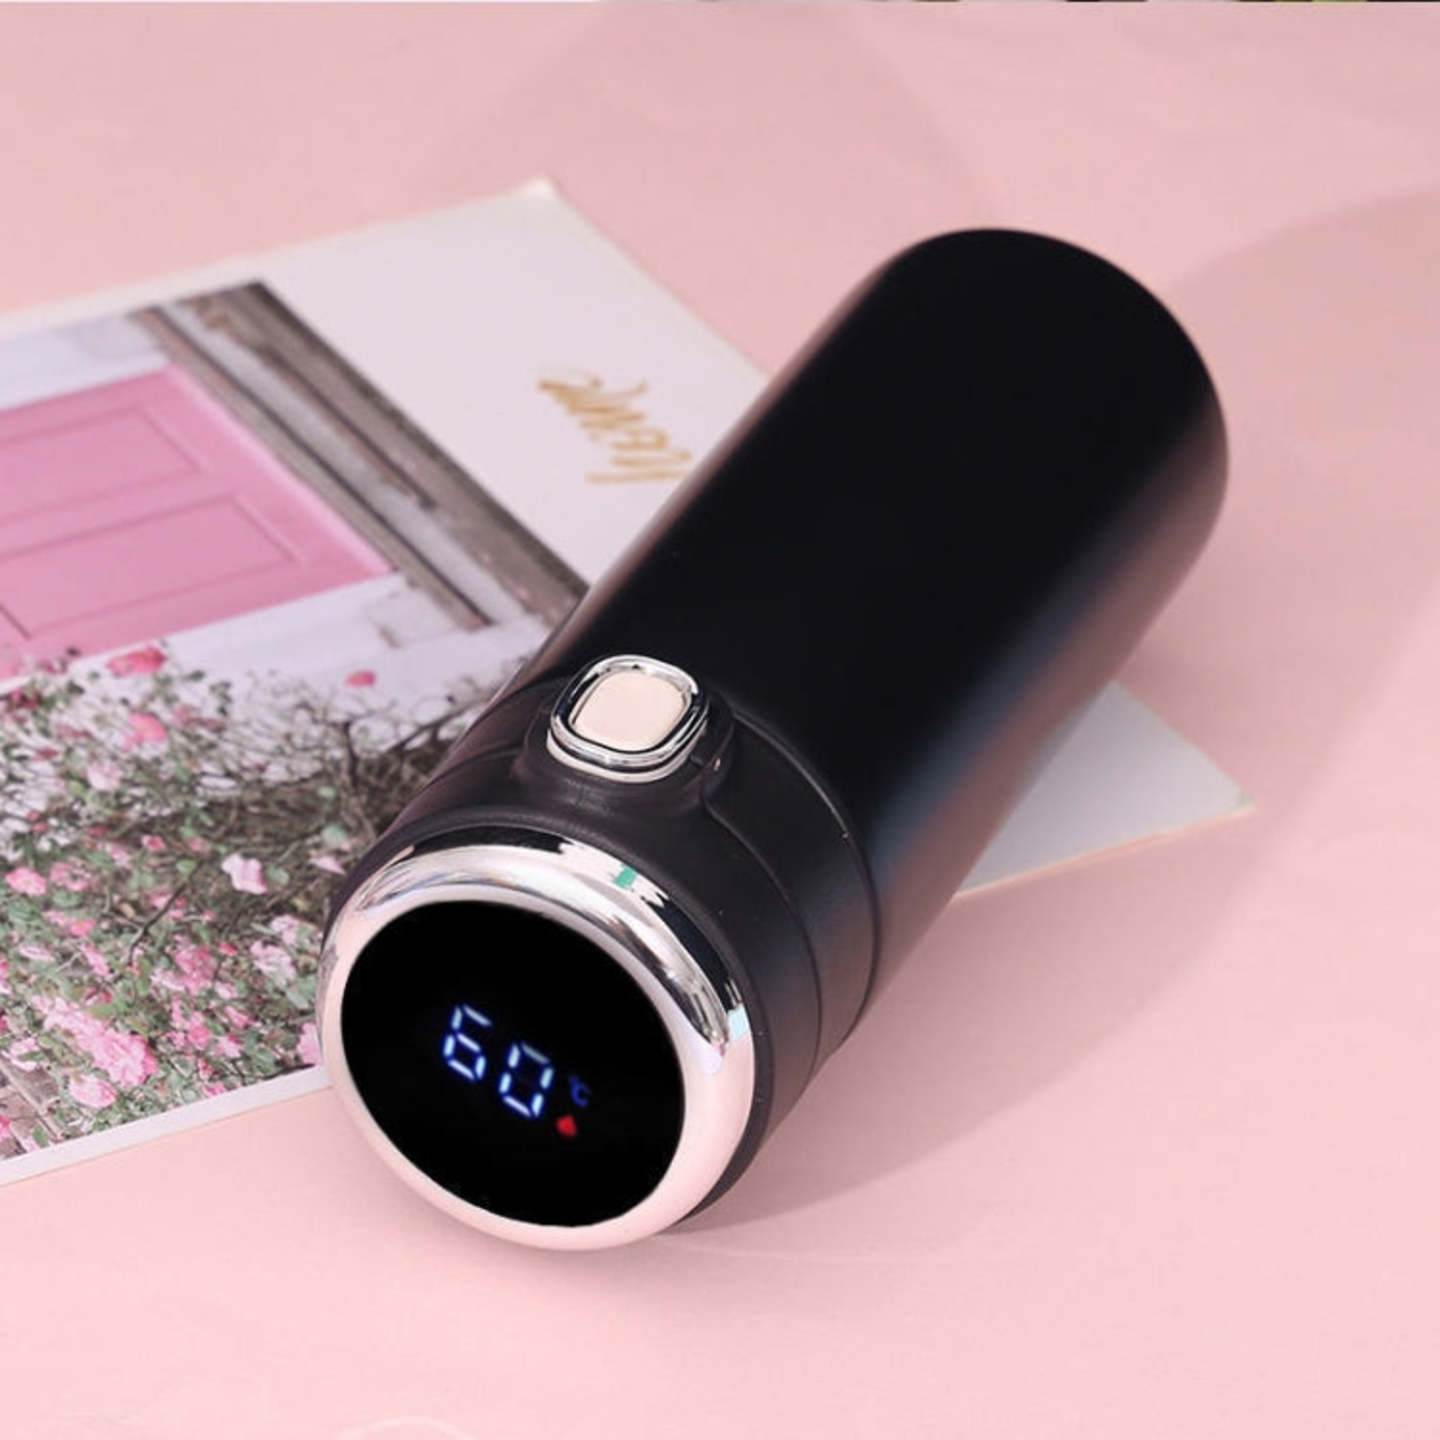 Personalized Premium Black Temperature Vaccum Flask - Laser Engraved